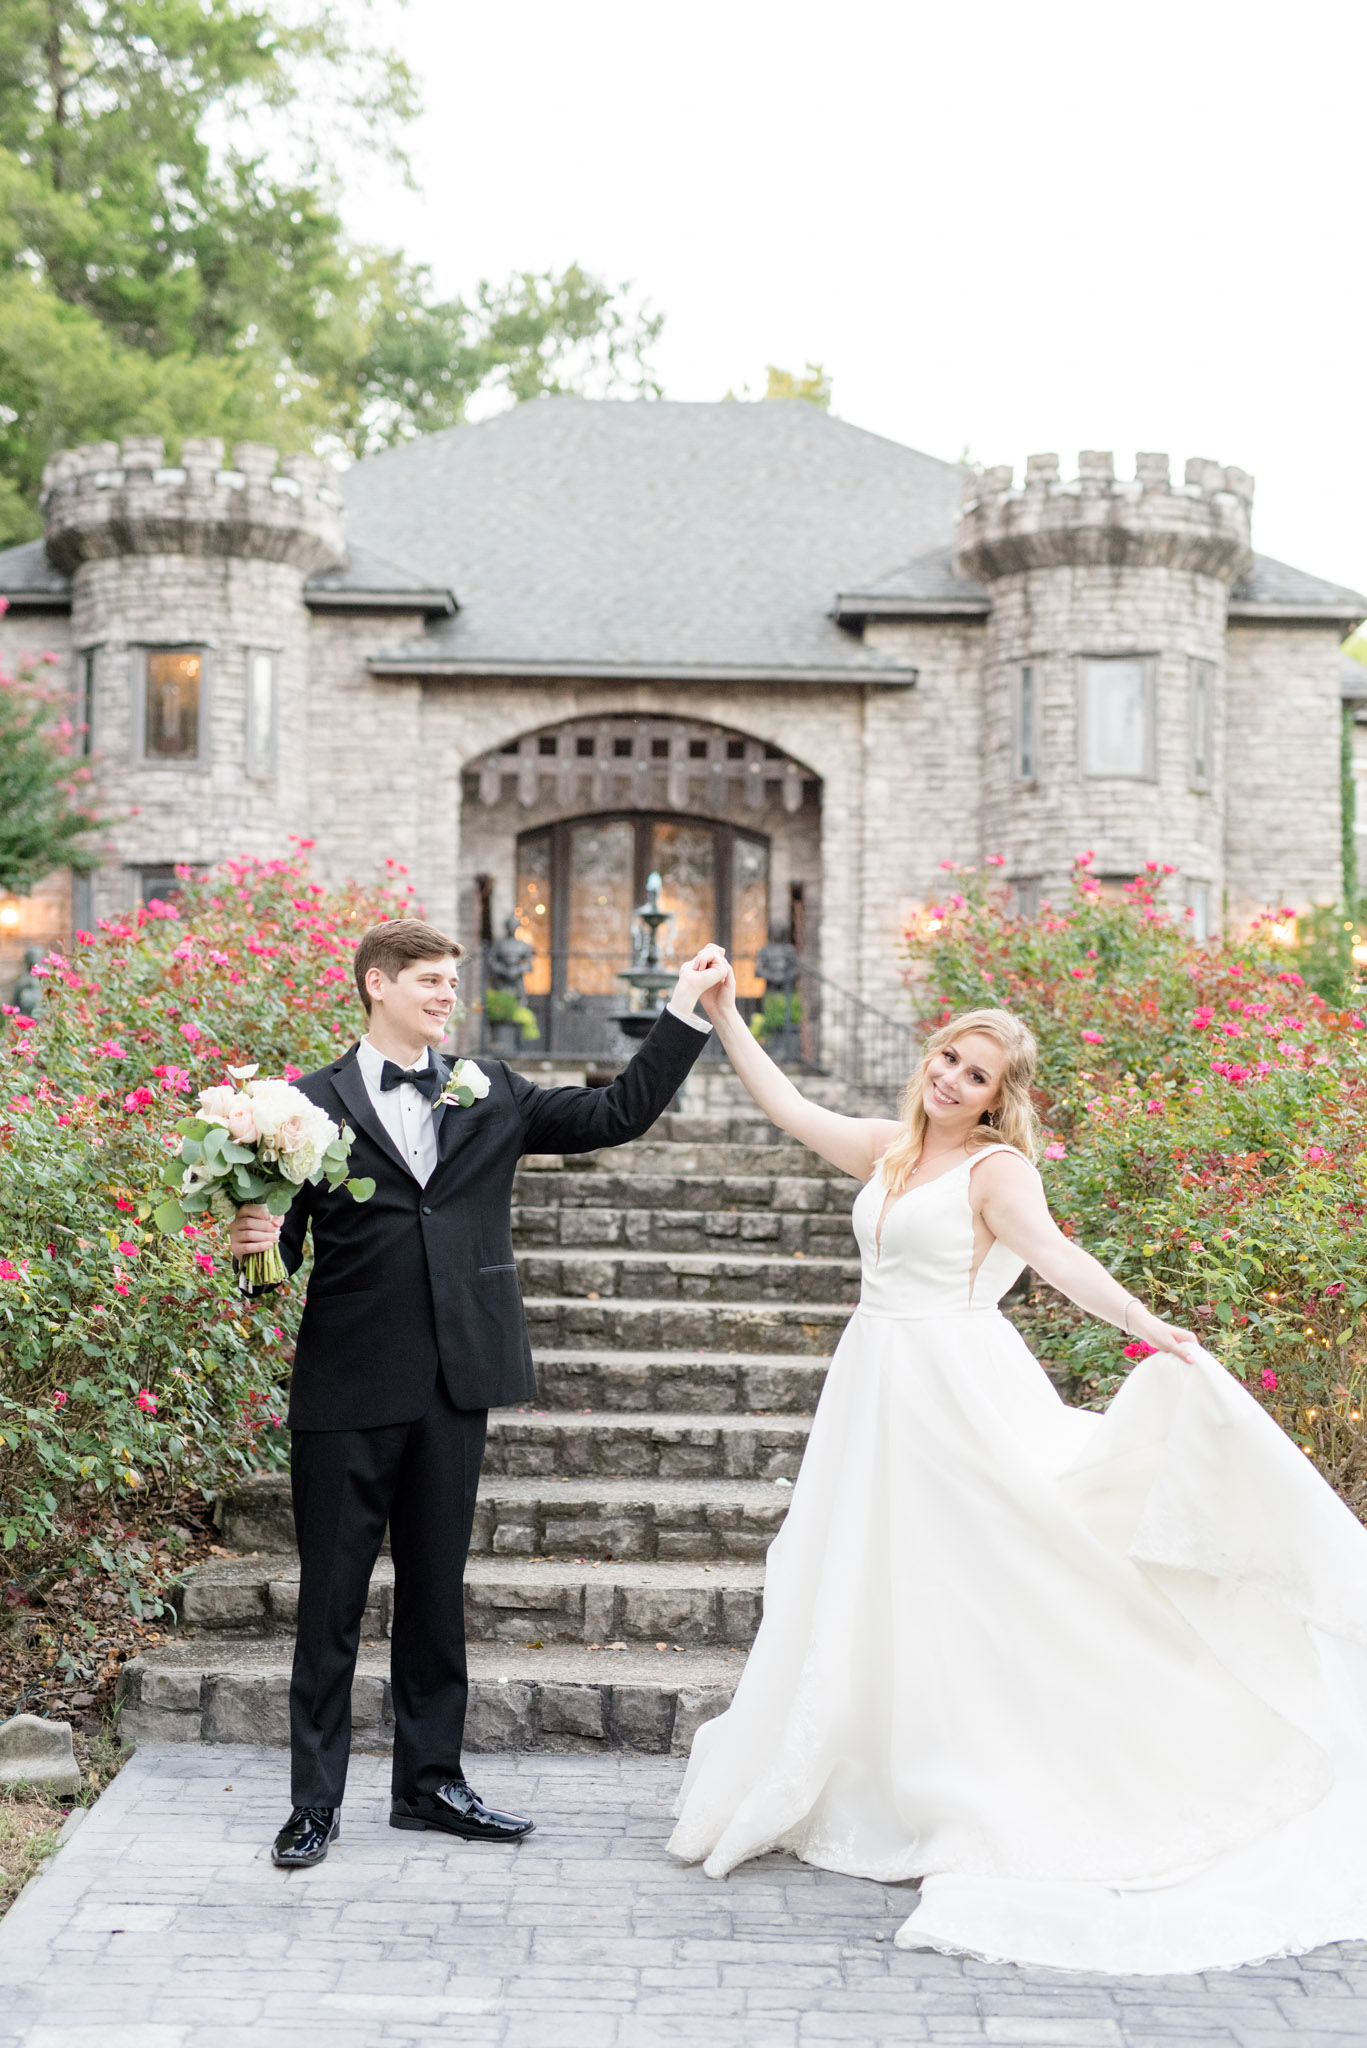 Groom twirls bride in front of Castle.